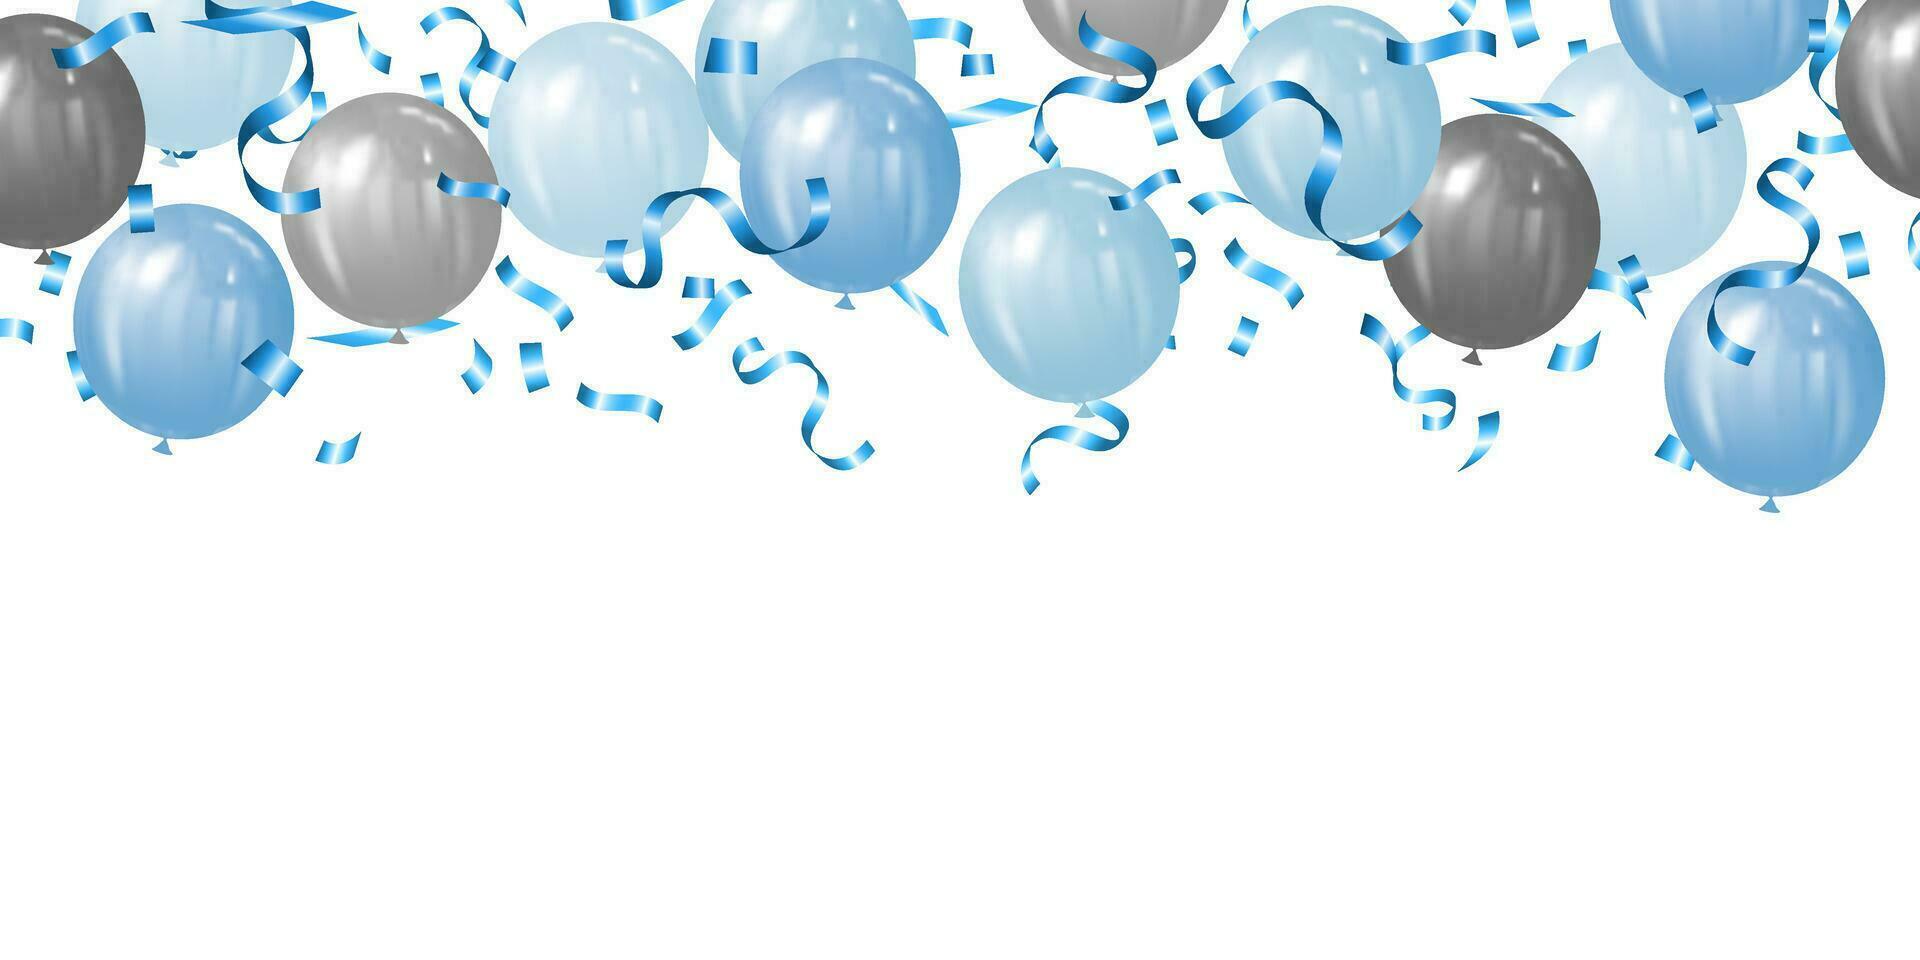 Contexte vecteur illustration de bleu et argent des ballons et bleu confettis pour les pères journée